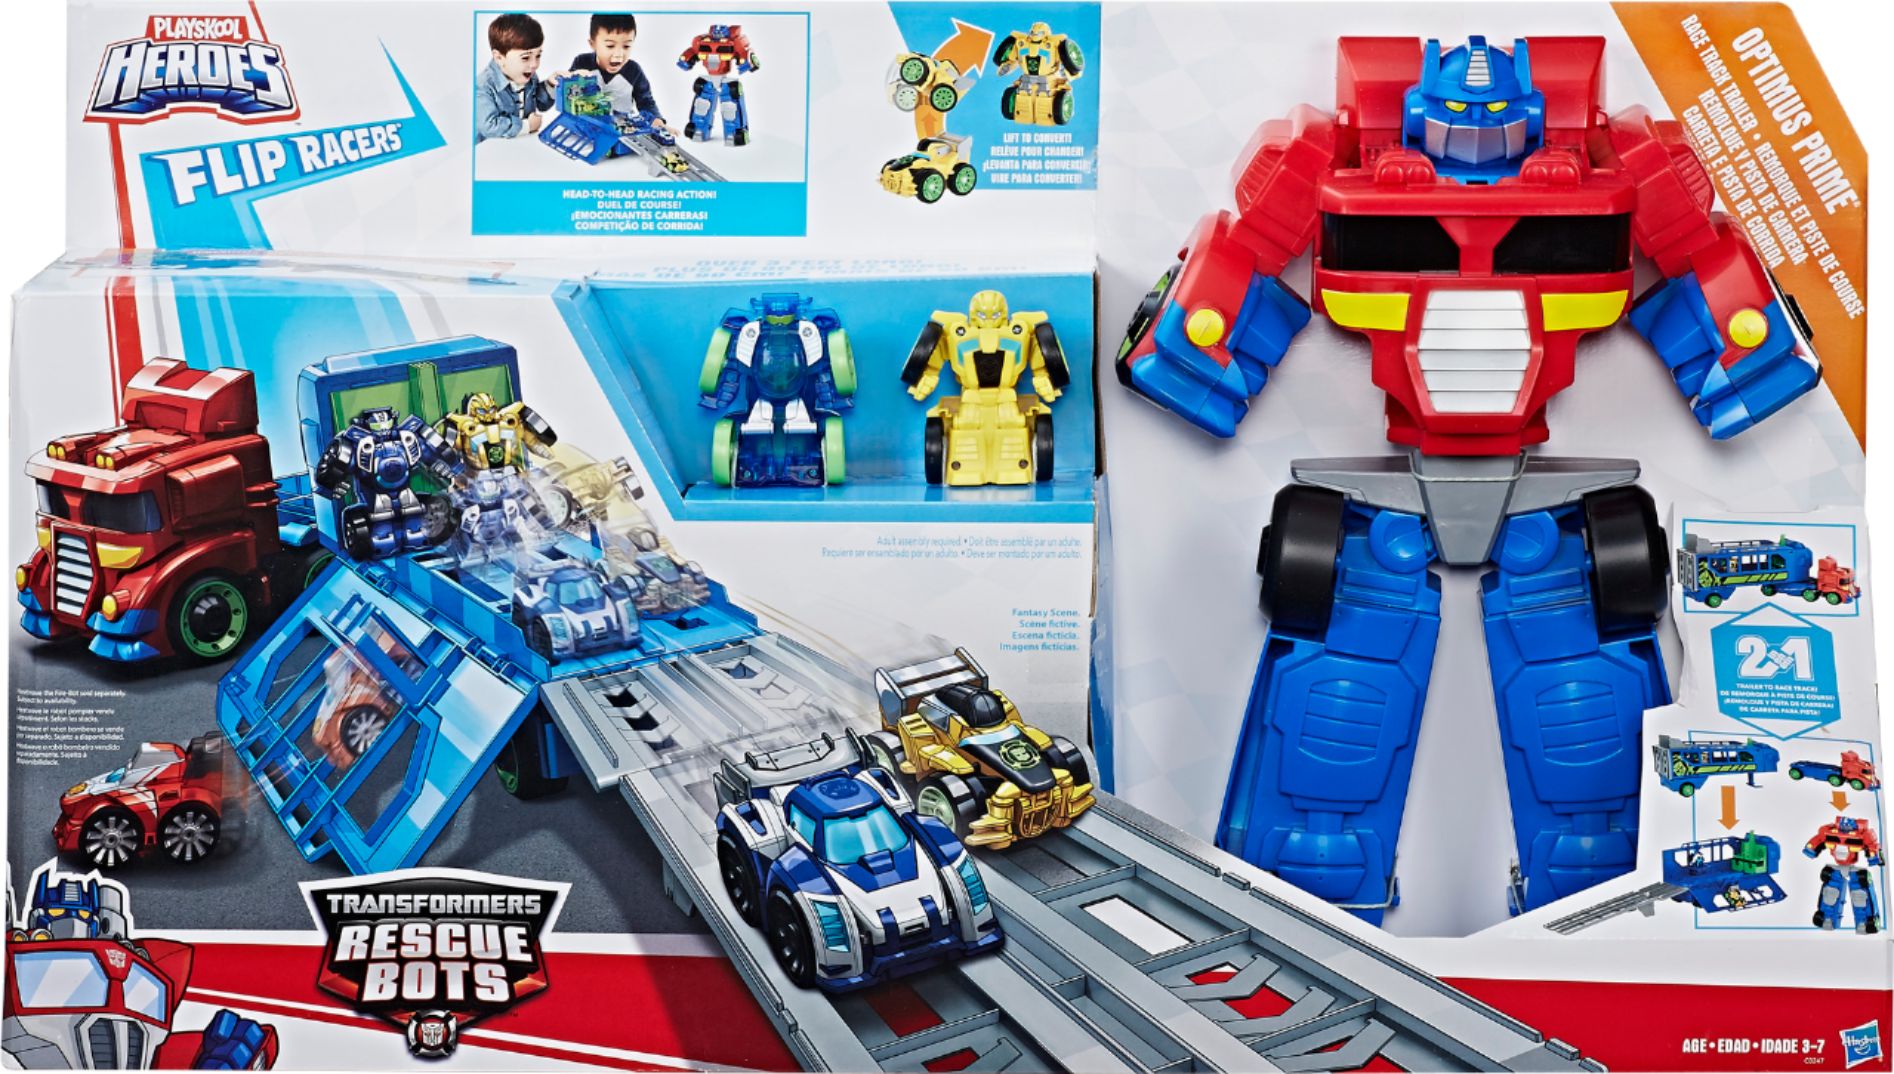 Playskool Heroes BUMBLEBEE Flip Racers Transformers Rescue Bots New 